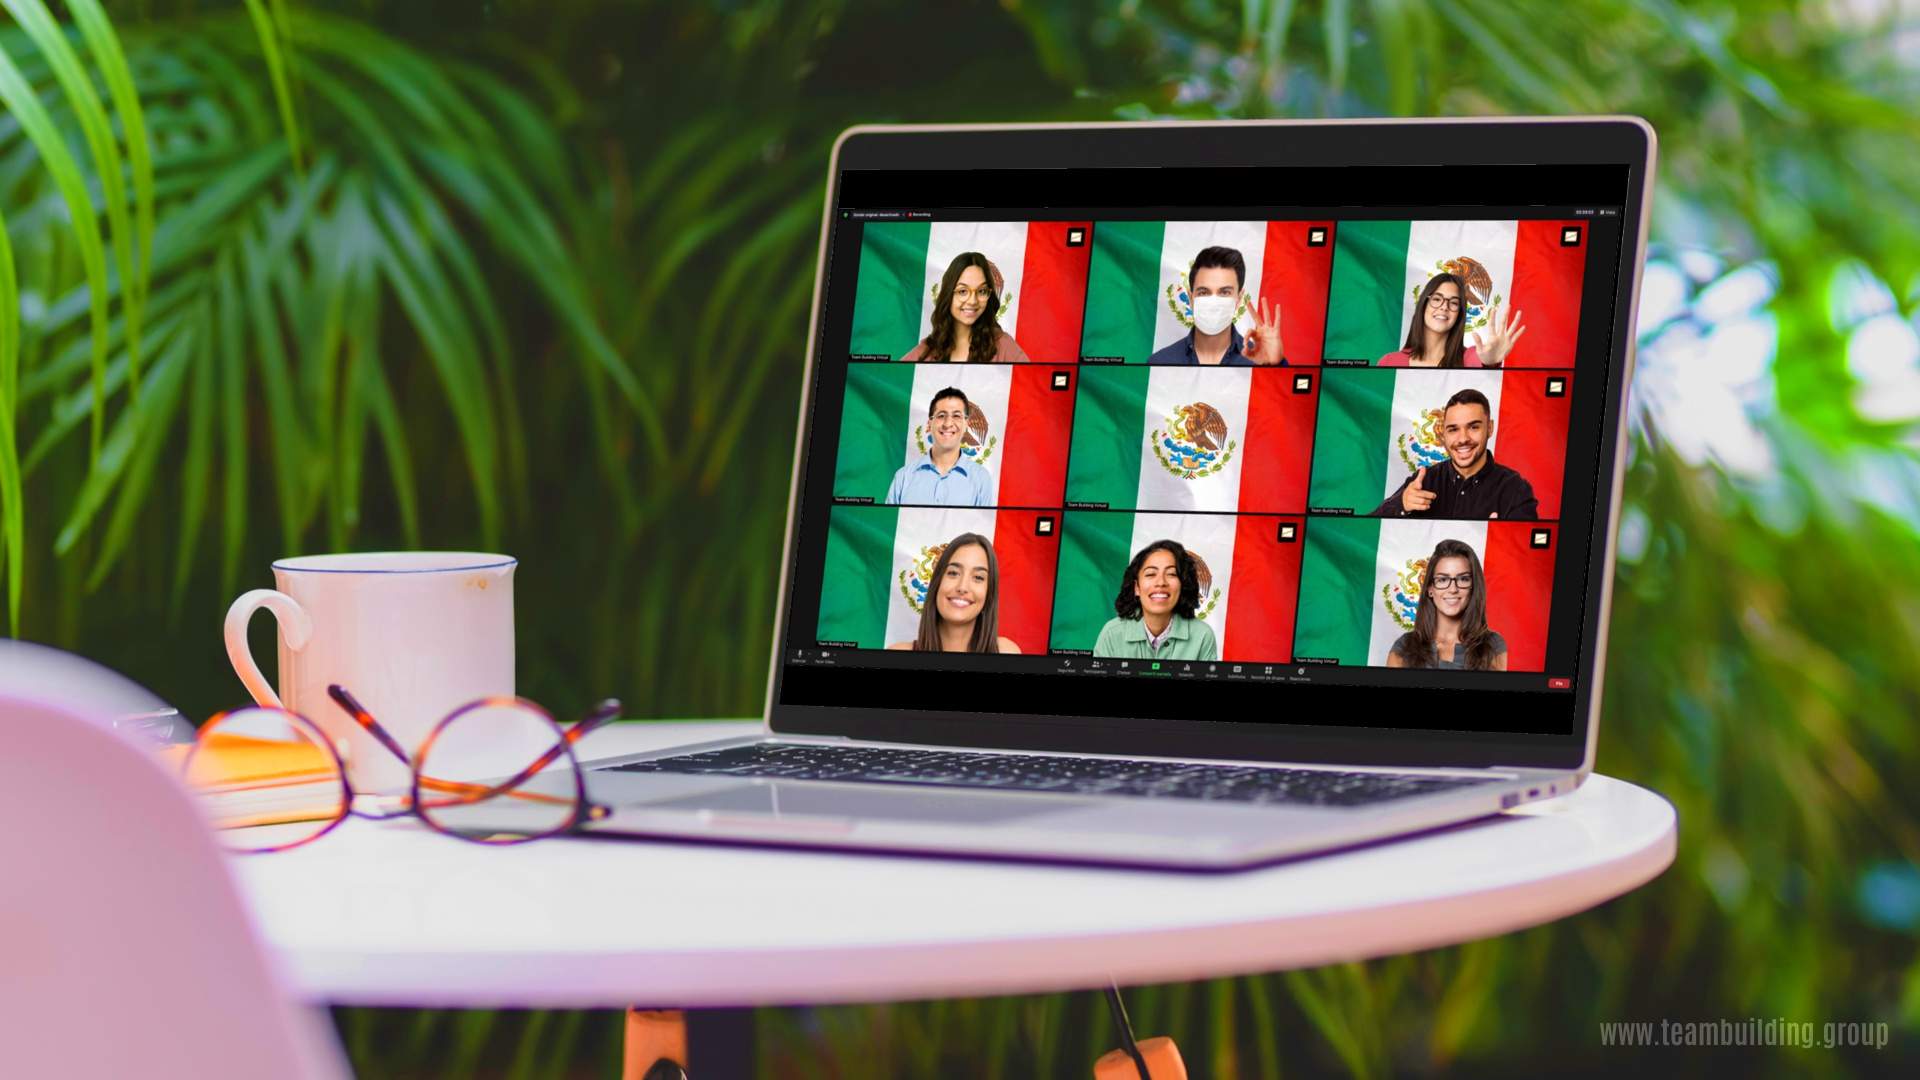 México Team Building, programas corporativos online y presenciales para desarrollar las nuevas habilidades de tus equipos de trabajo remotos frente a los cambios